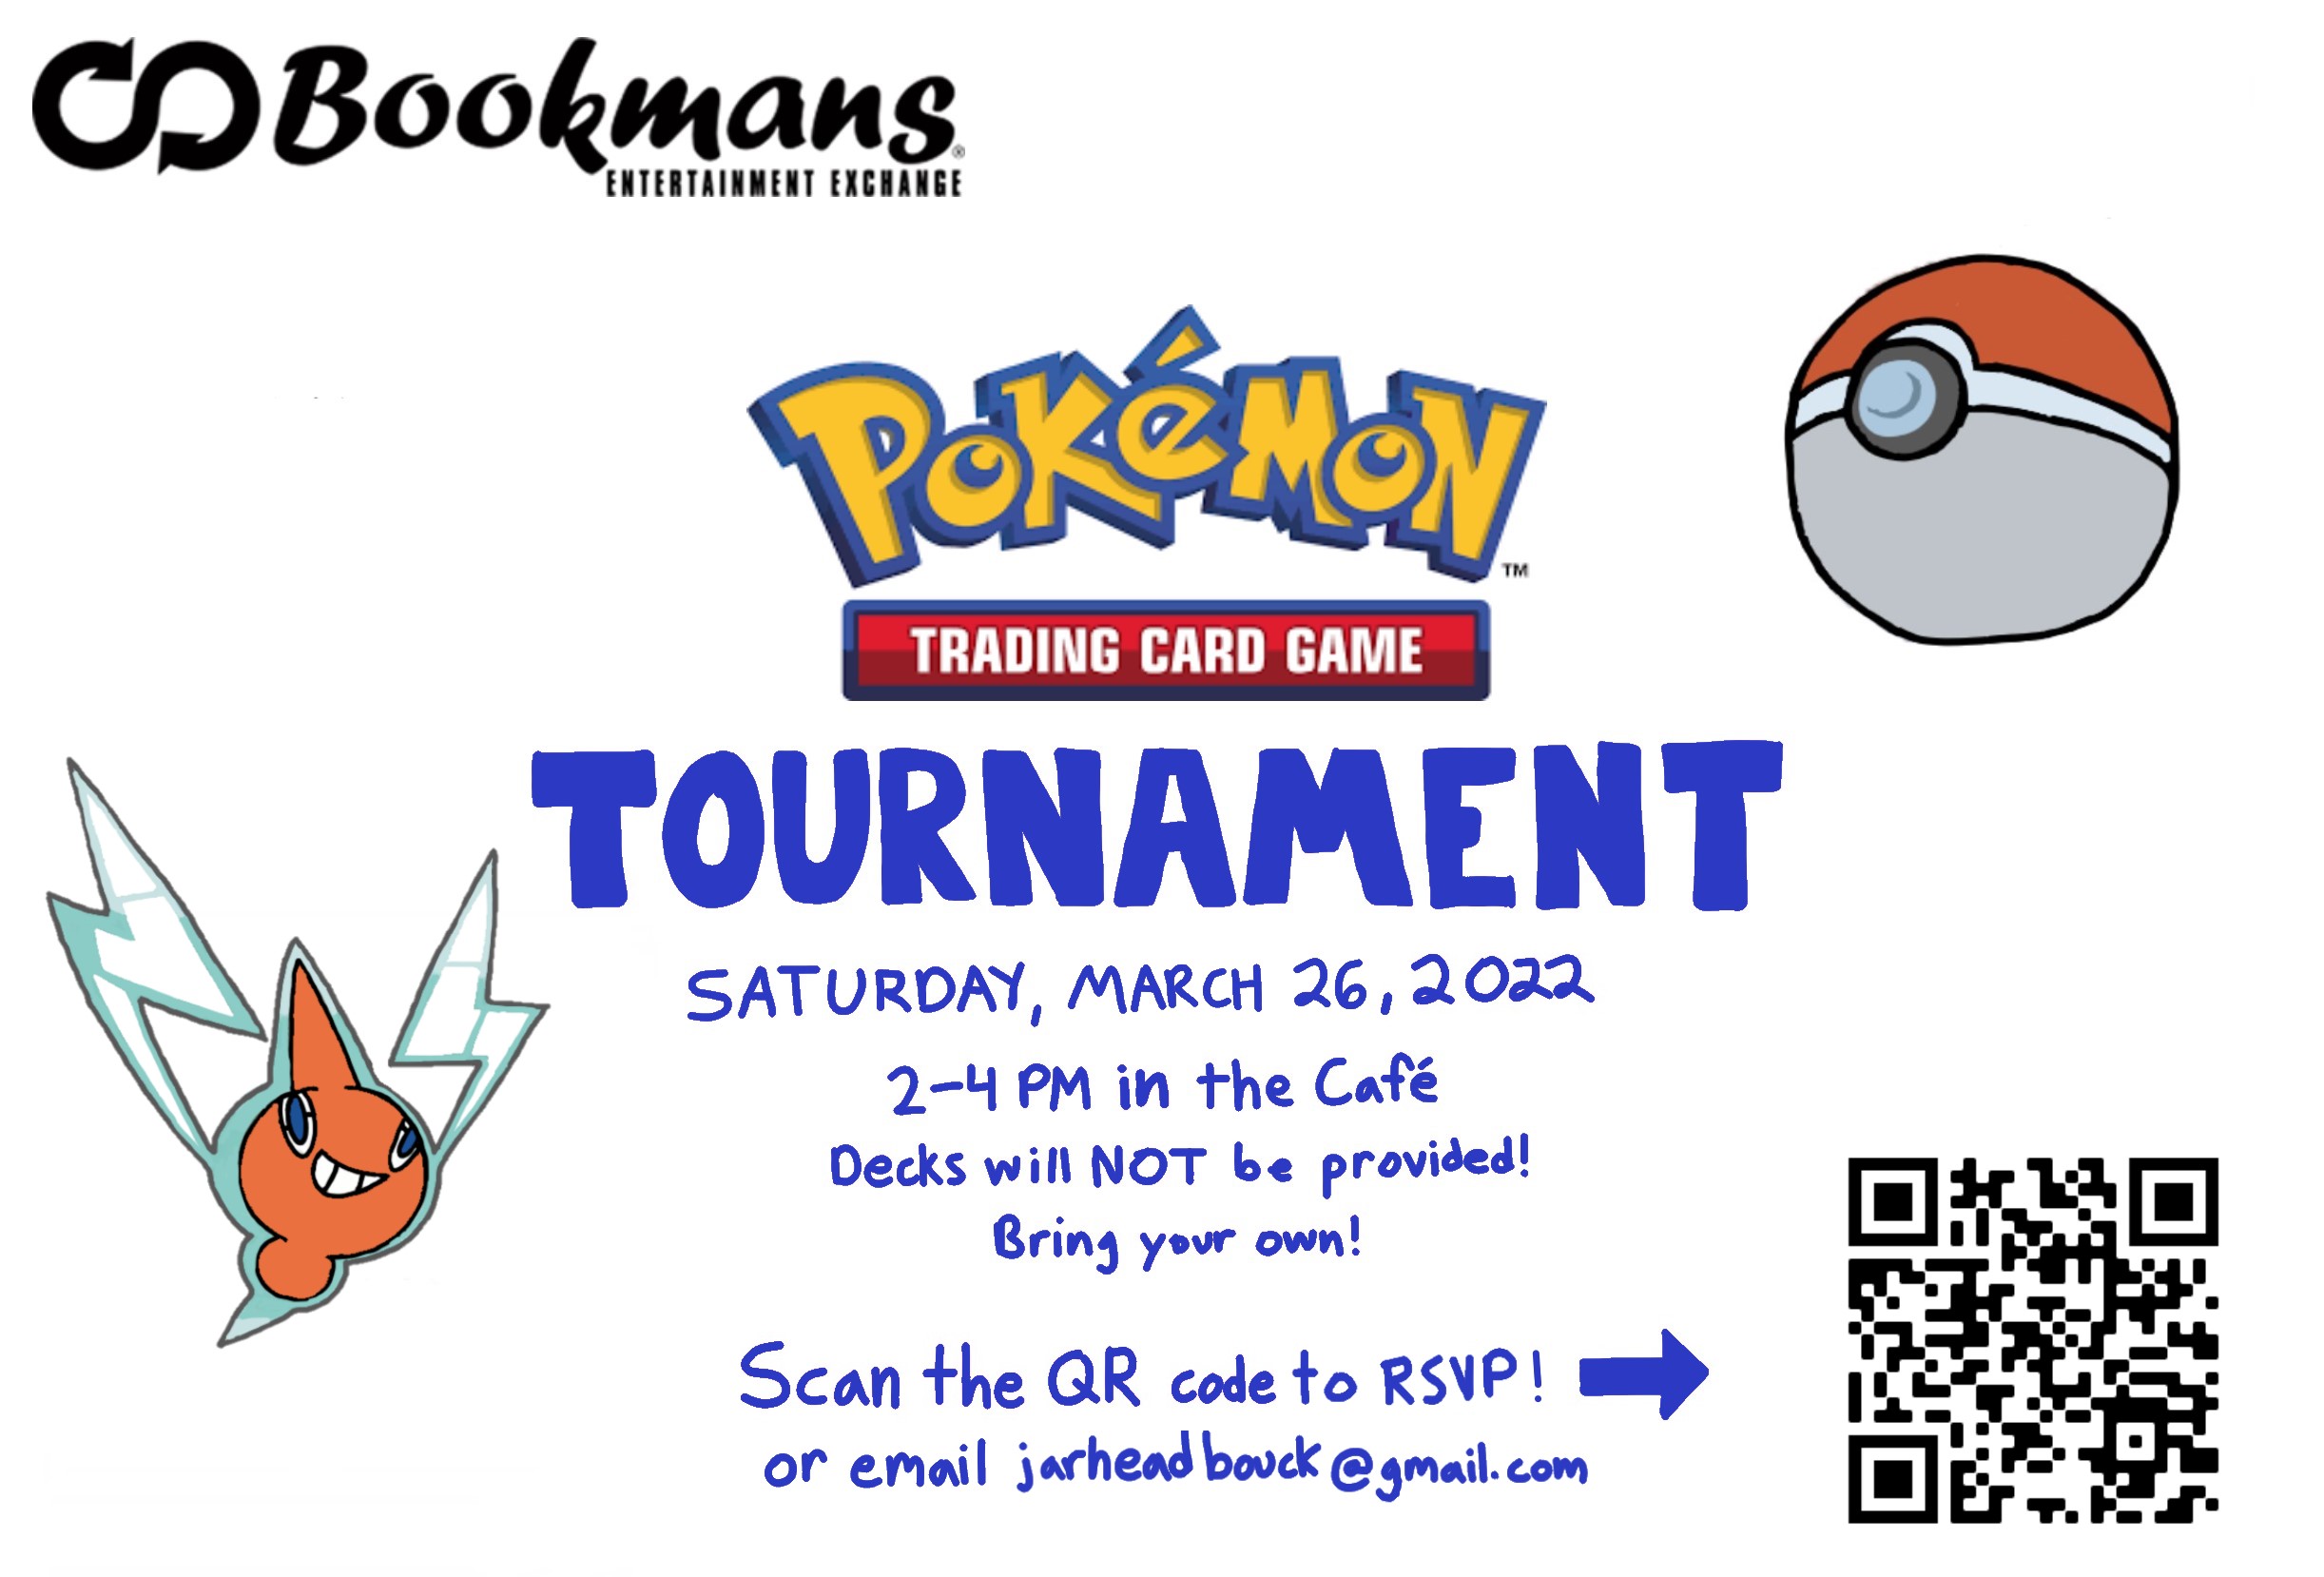 Pokémon Trading Card Tournament! Bookmans Entertainment Exchange